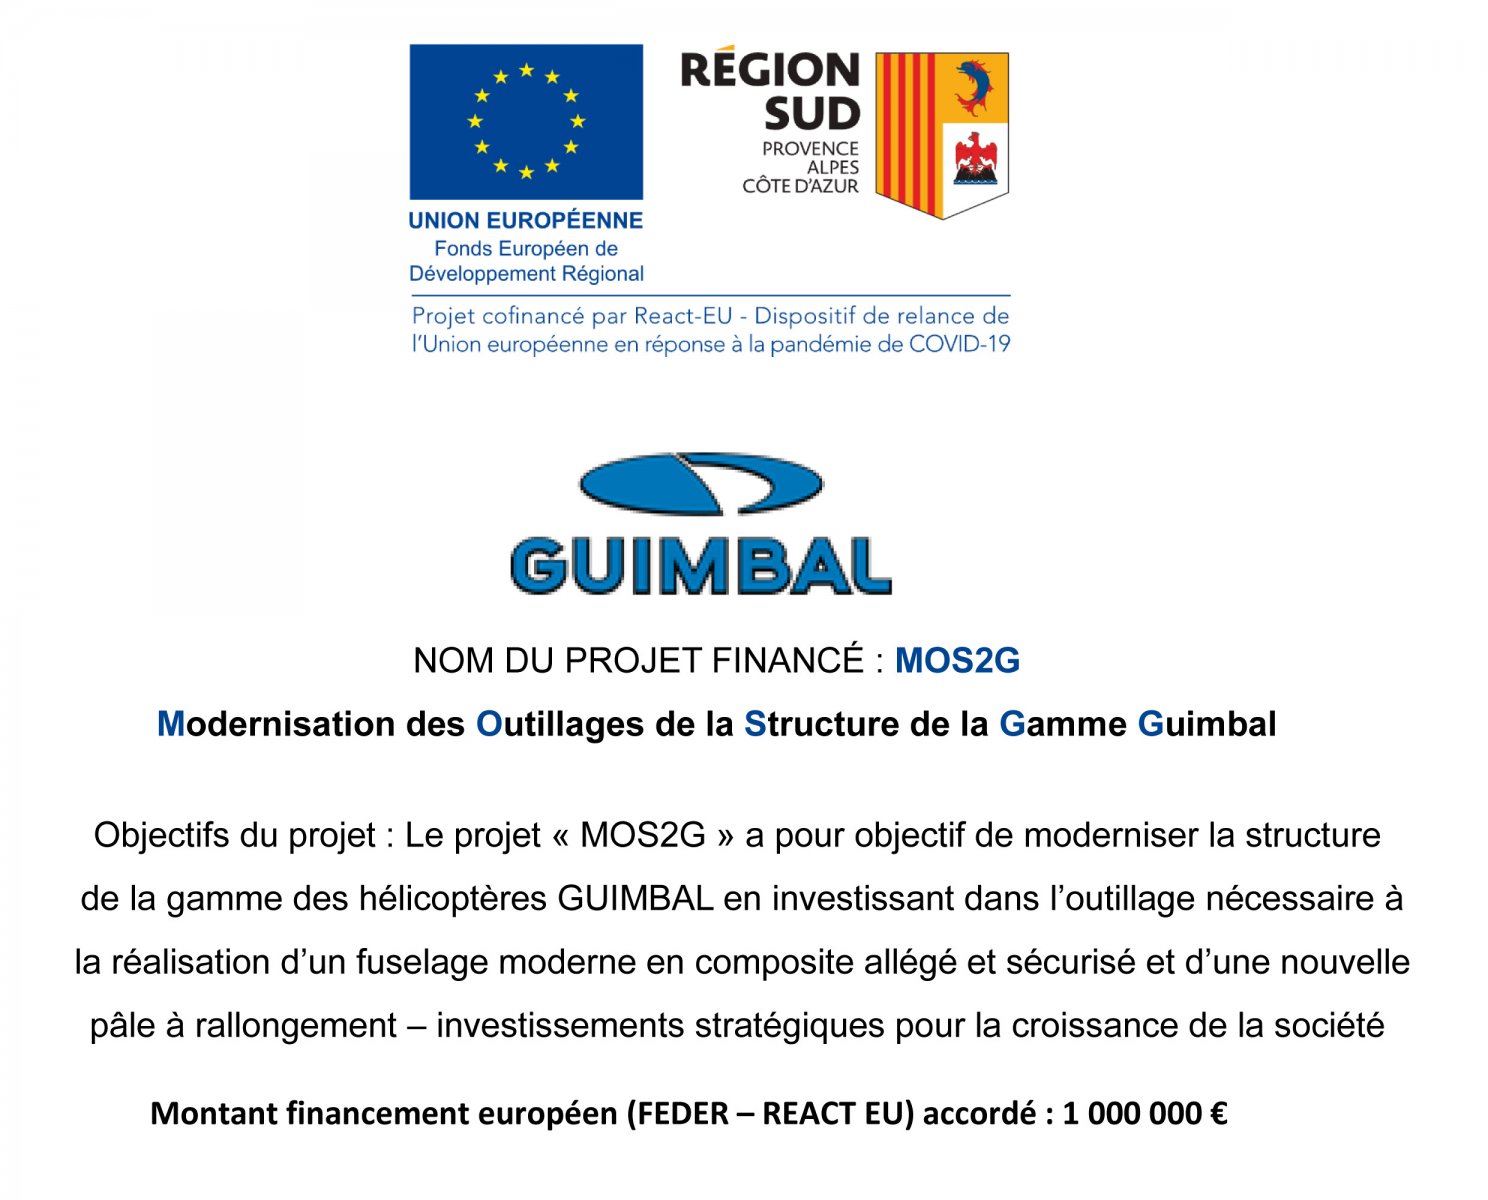 NOM DU PROJET FINANCÉ : MOS2G
Modernisation des Outillages de la Structure de la Gamme Guimbal